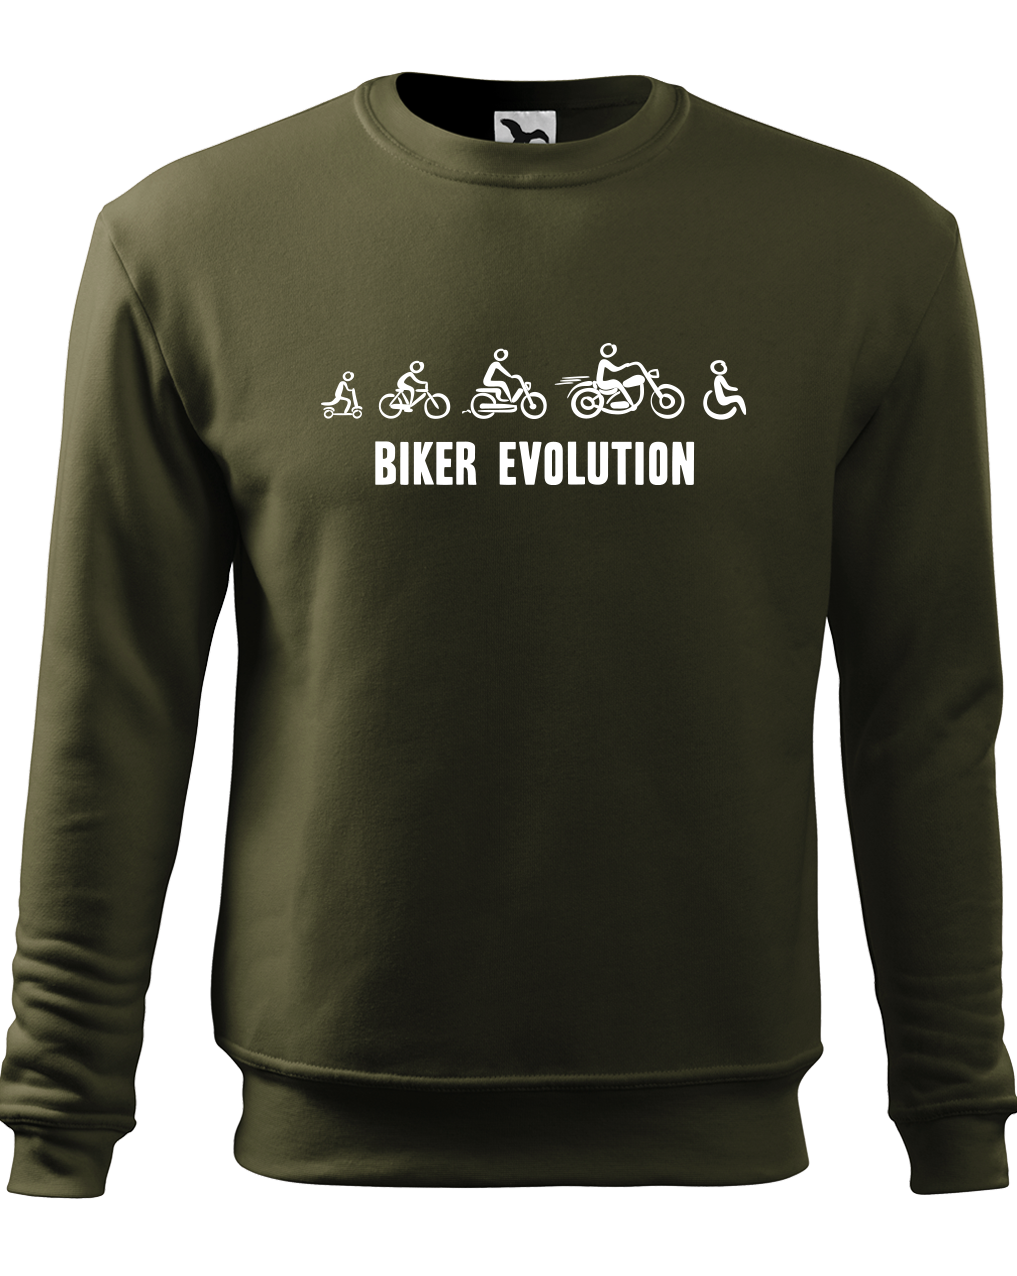 Moto mikina - Biker Evolution Velikost: S, Barva: Military